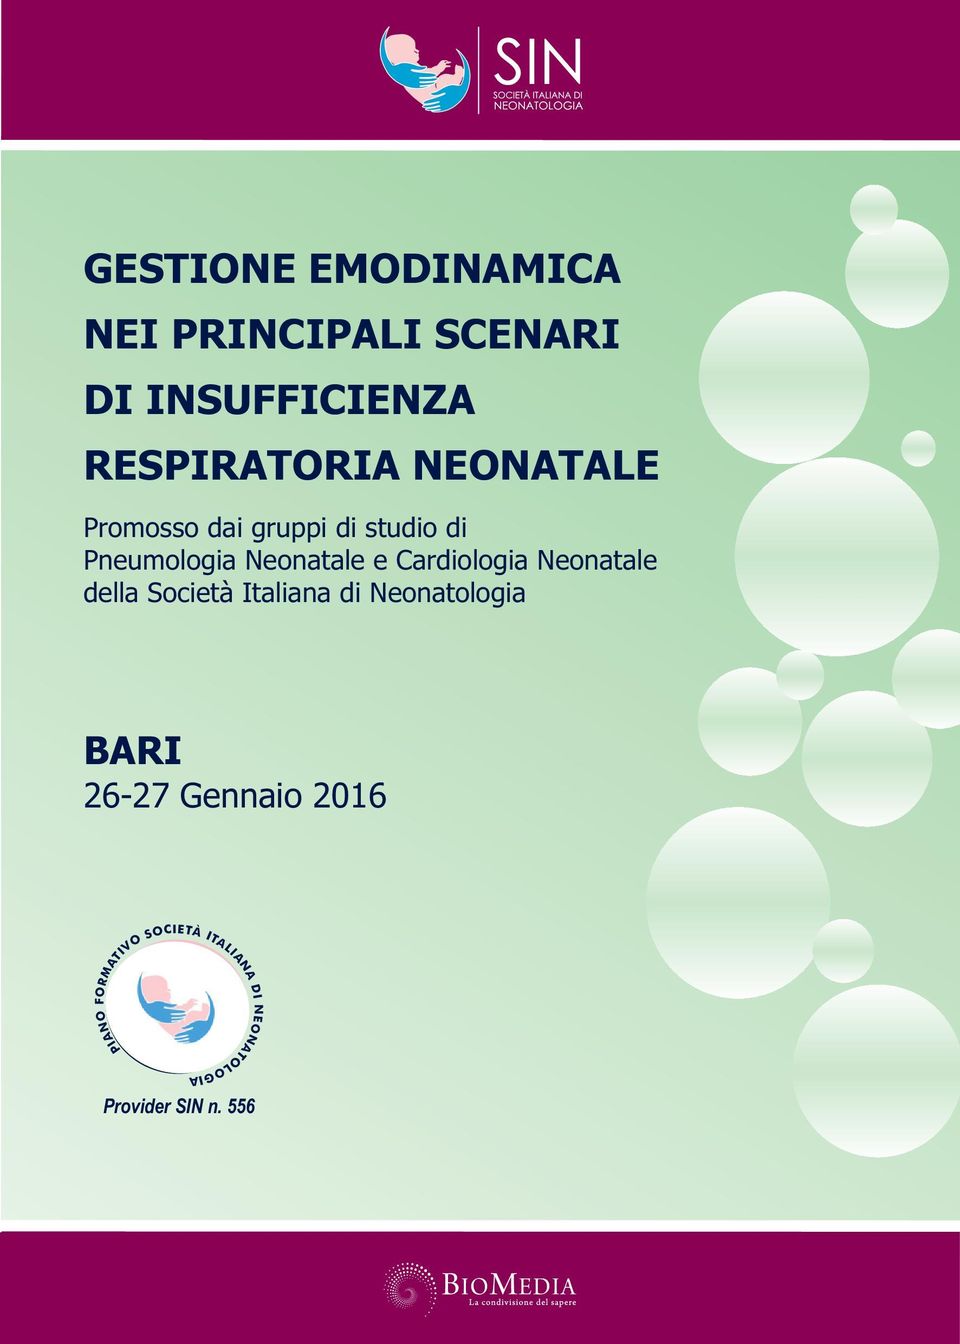 Cardiologia Neonatale della Società Italiana di Neonatologia BARI 26-27